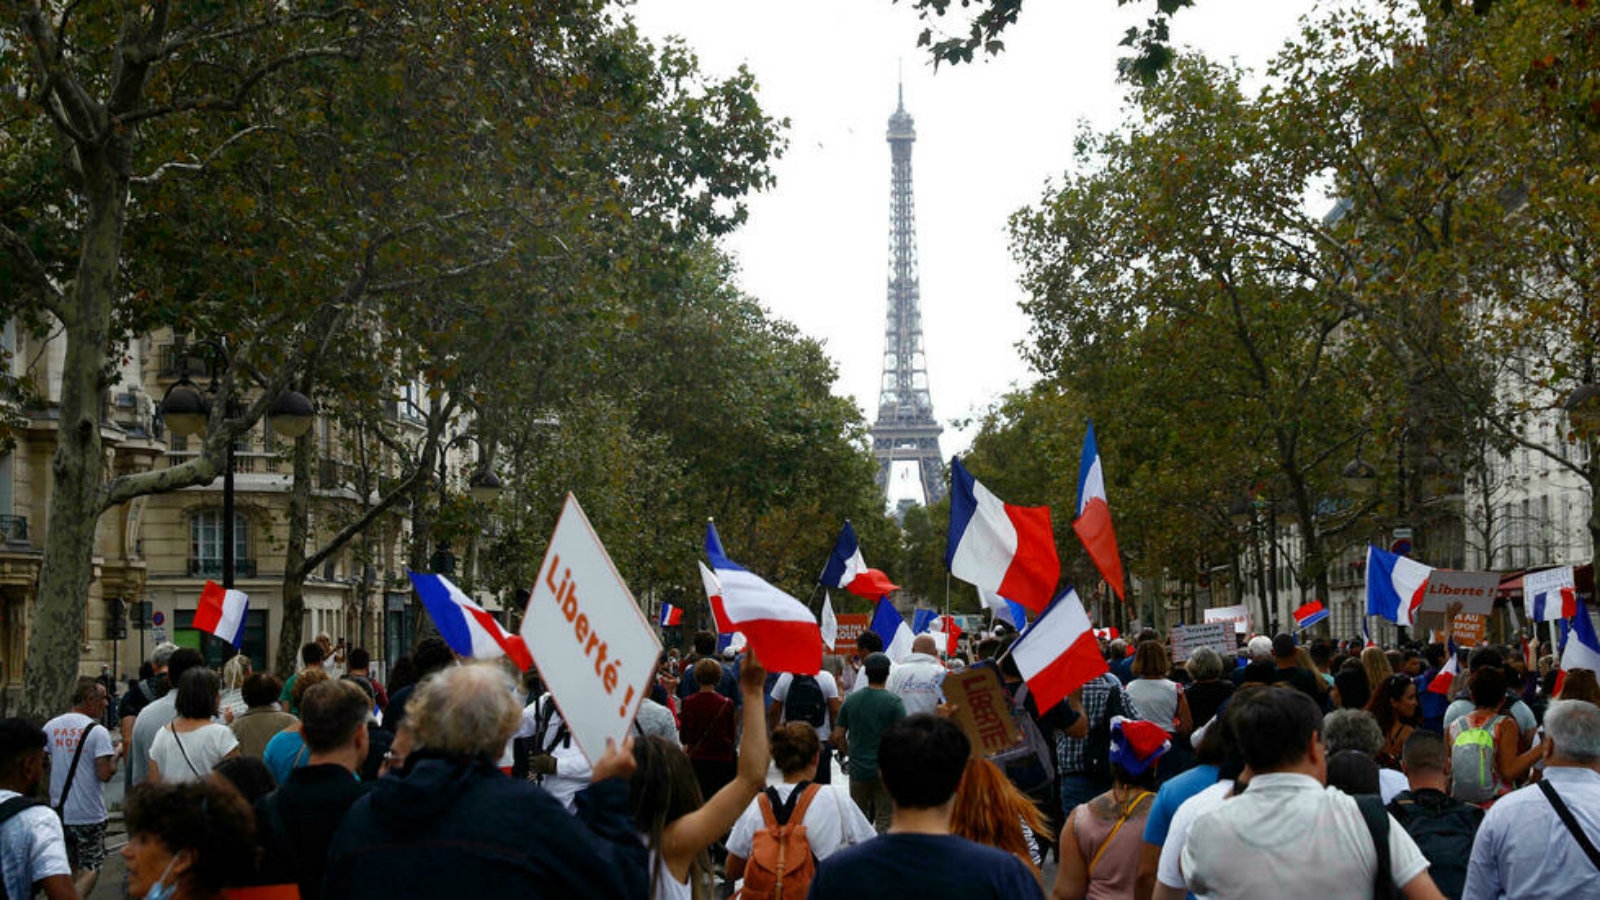 متظاهرون في مسيرة احتجاج ضد التصاريح الصحية، باريس، فرنسا. بتاريخ 28 آب/أغسطس 2021.